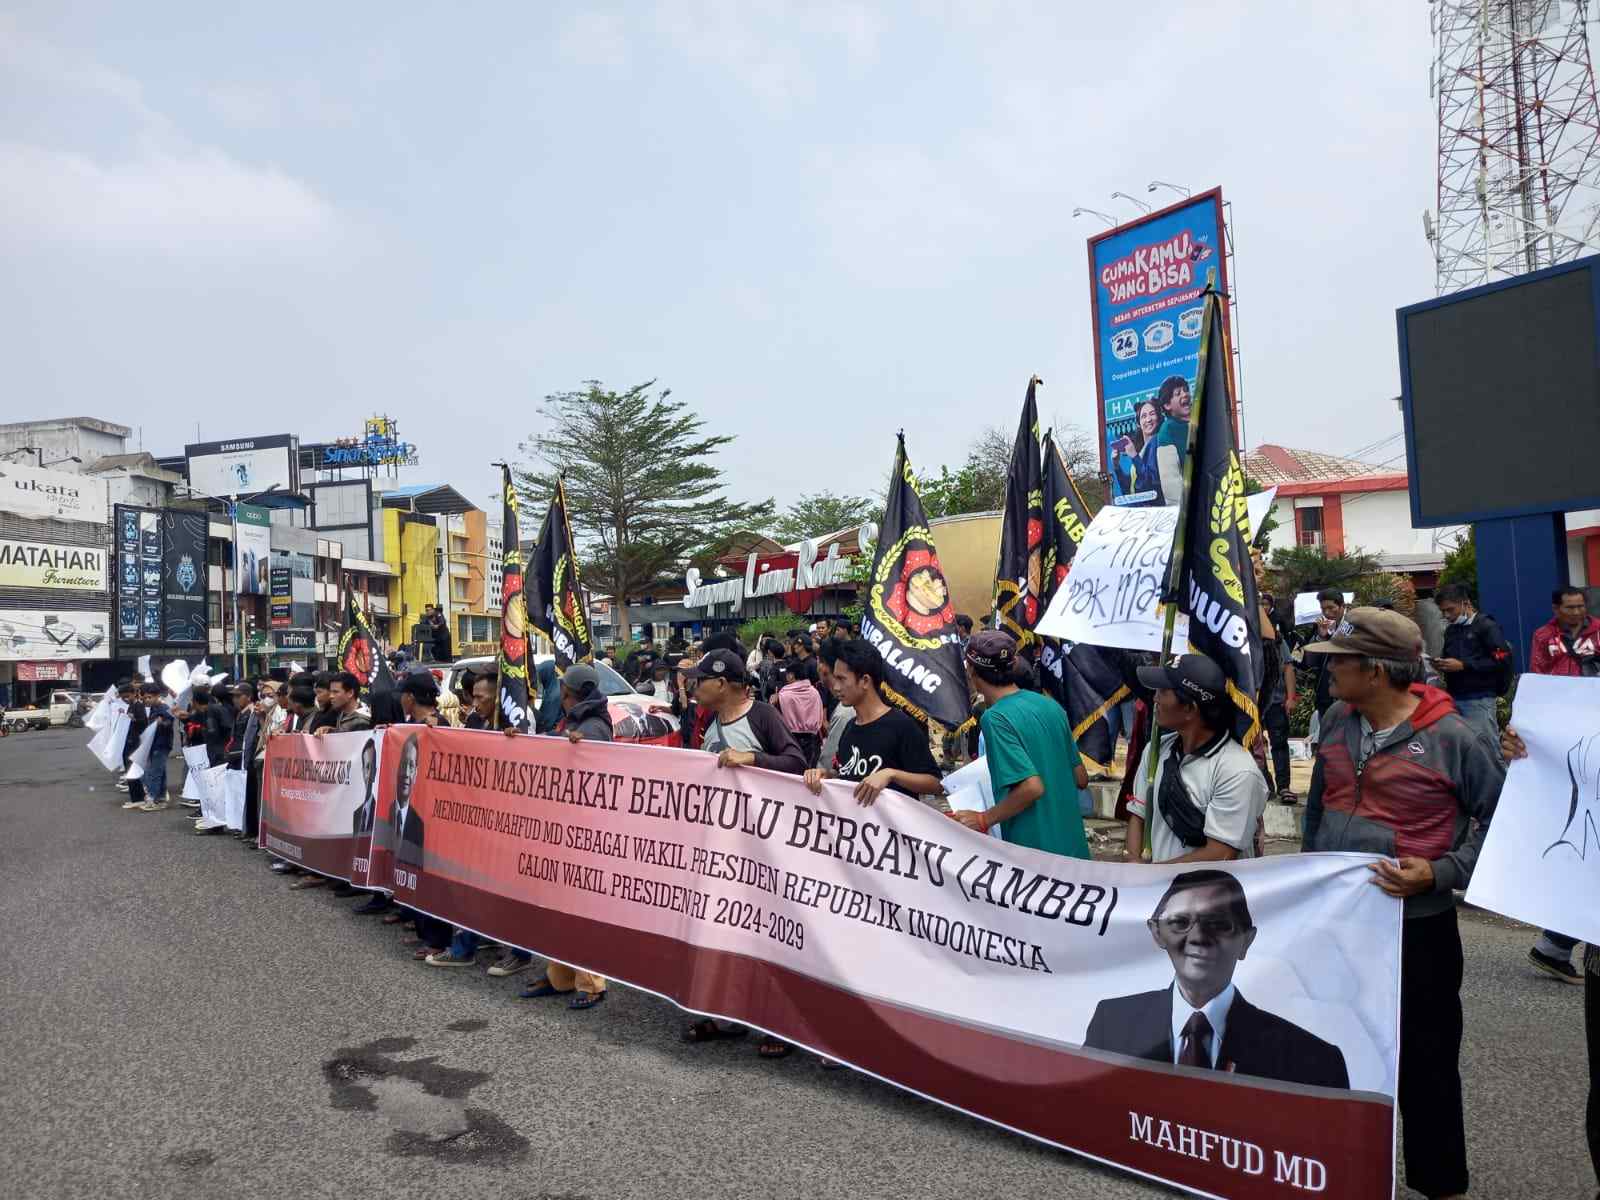 Lewat Aksi, Sekelompok Masyarakat Bengkulu Dukung Mahfud MD Cawapres Ganjar Pranowo